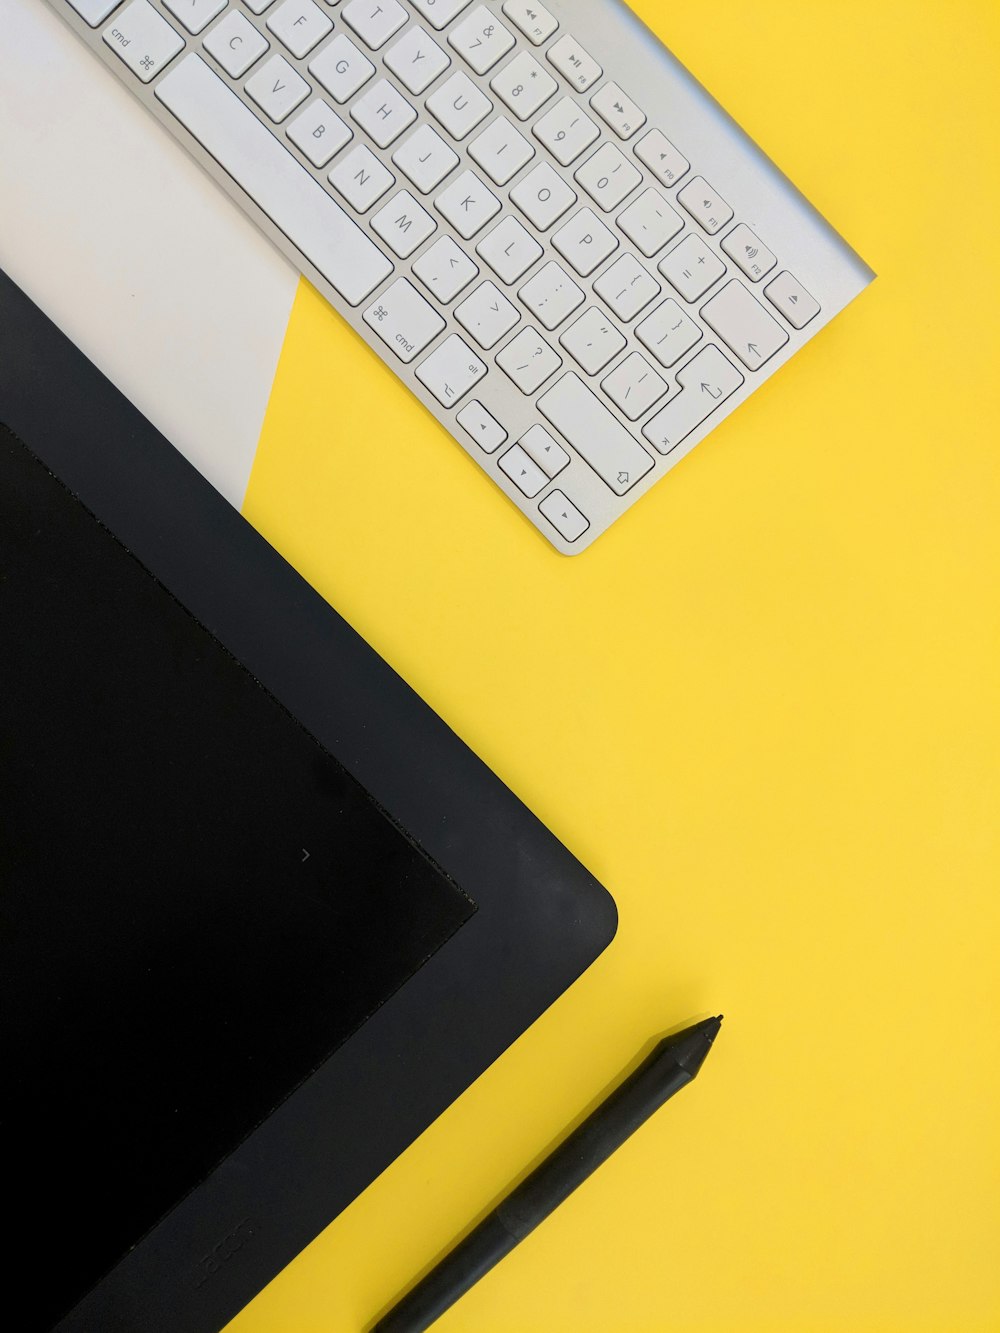 회색 Apple 무선 키보드 옆에 검은 색 태블릿 컴퓨터와 스타일러스 펜